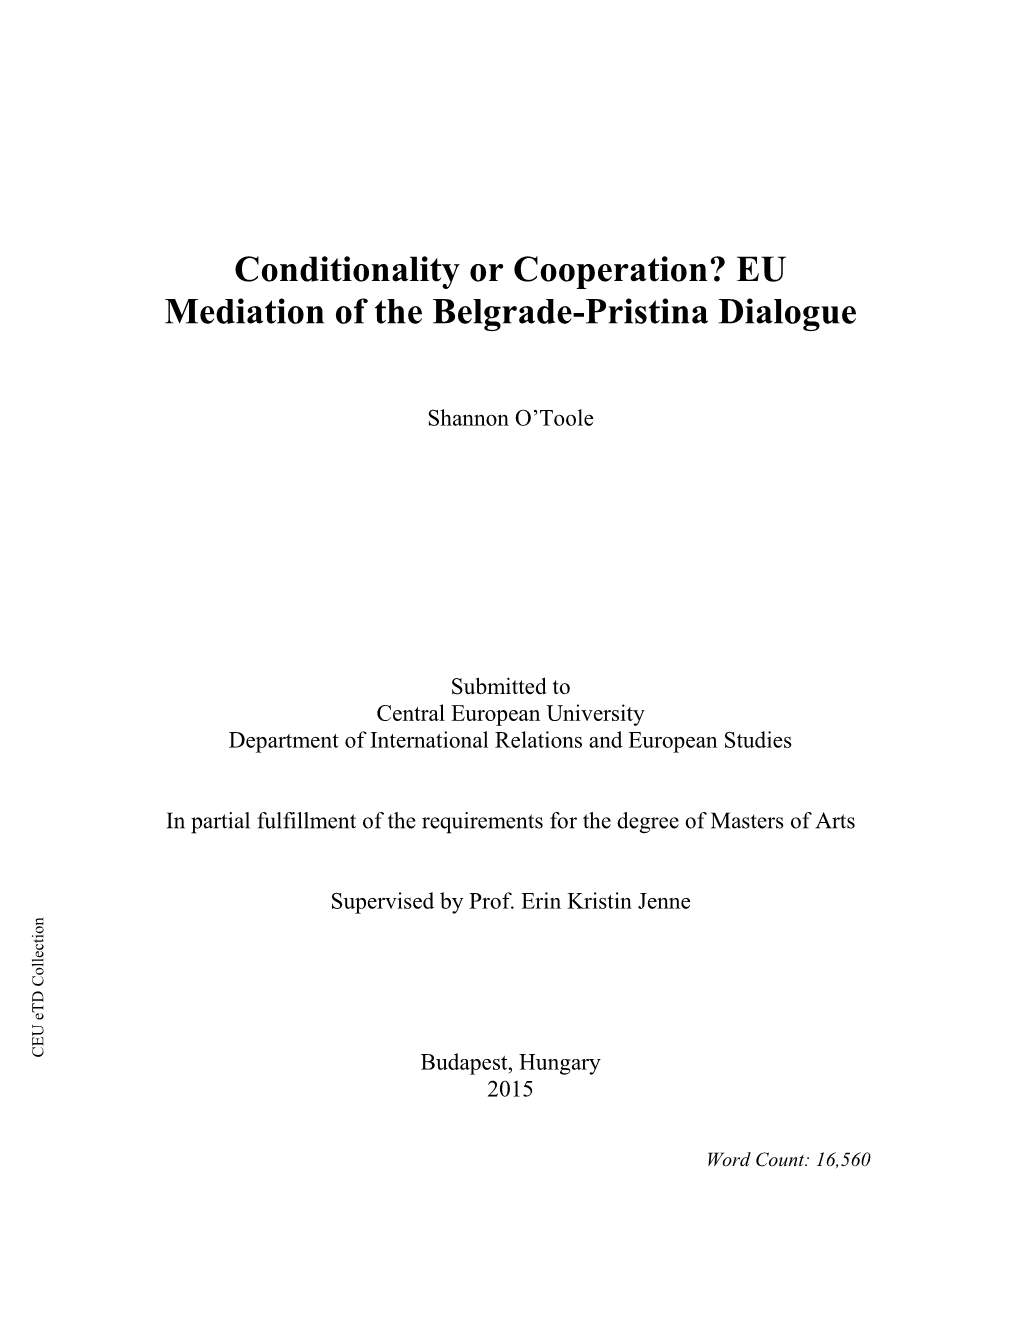 EU Mediation of the Belgrade-Pristina Dialogue